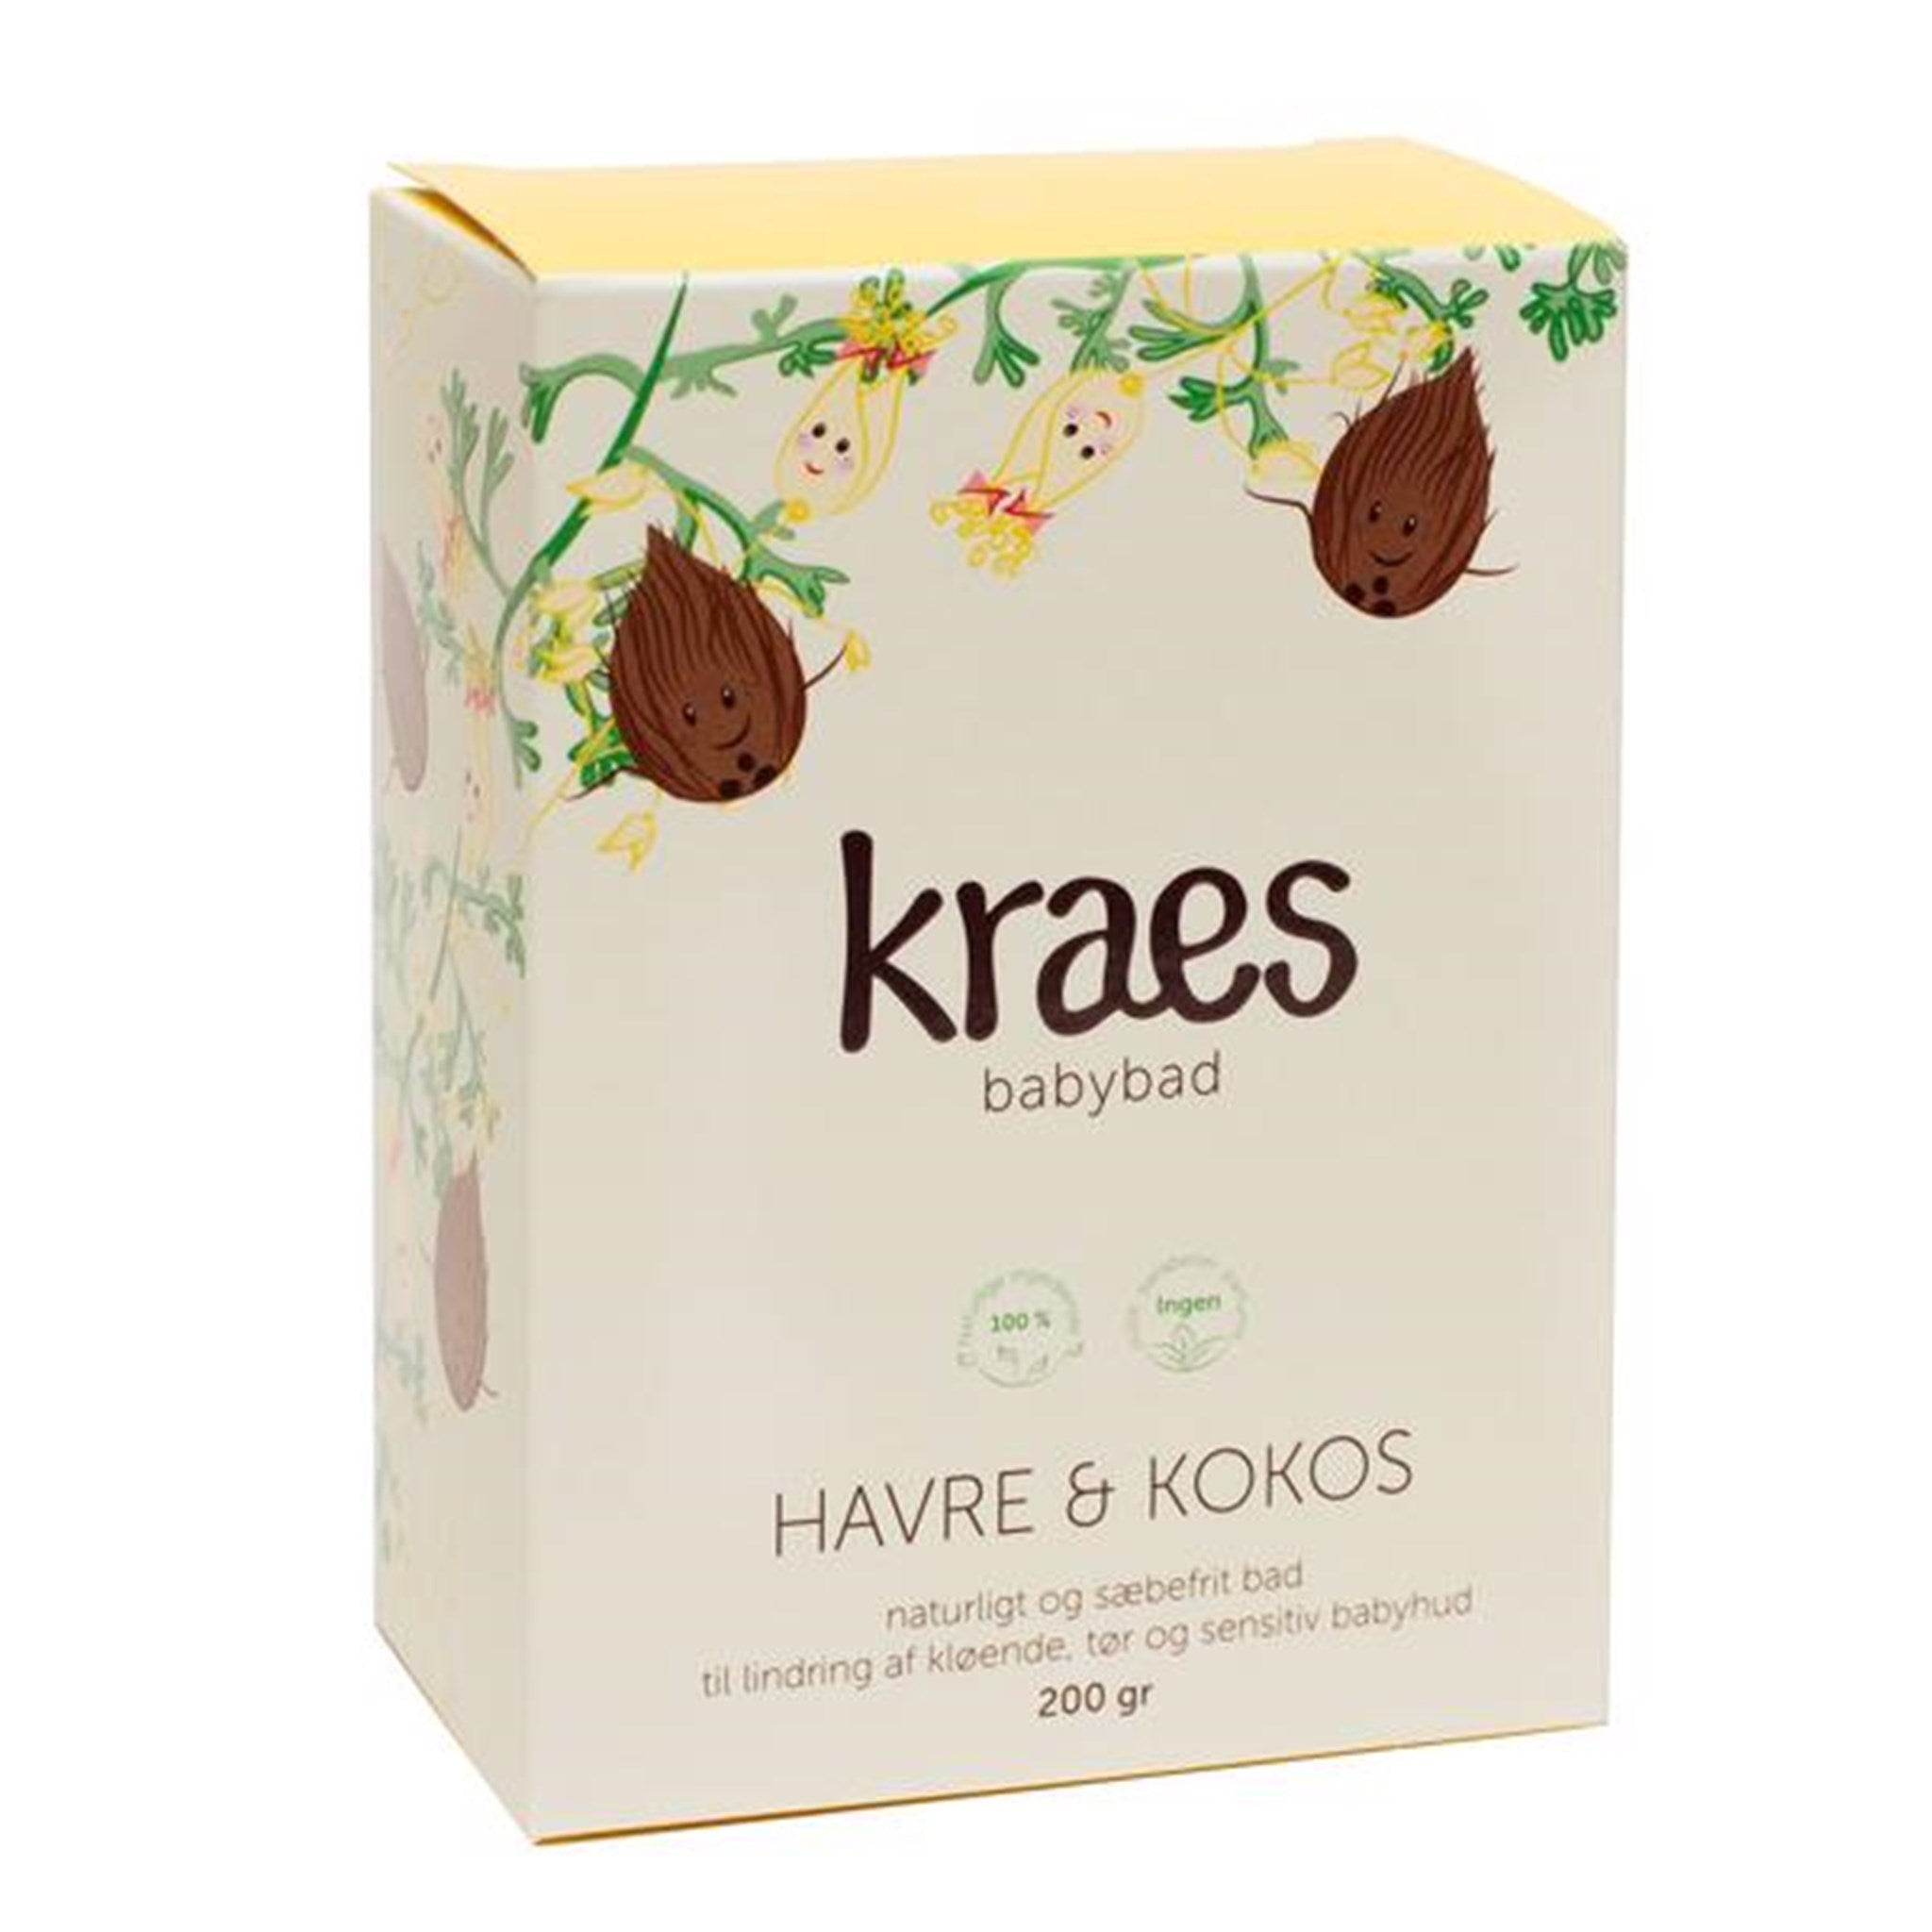 Kraes Babybad Havre/Kokos 200 g.